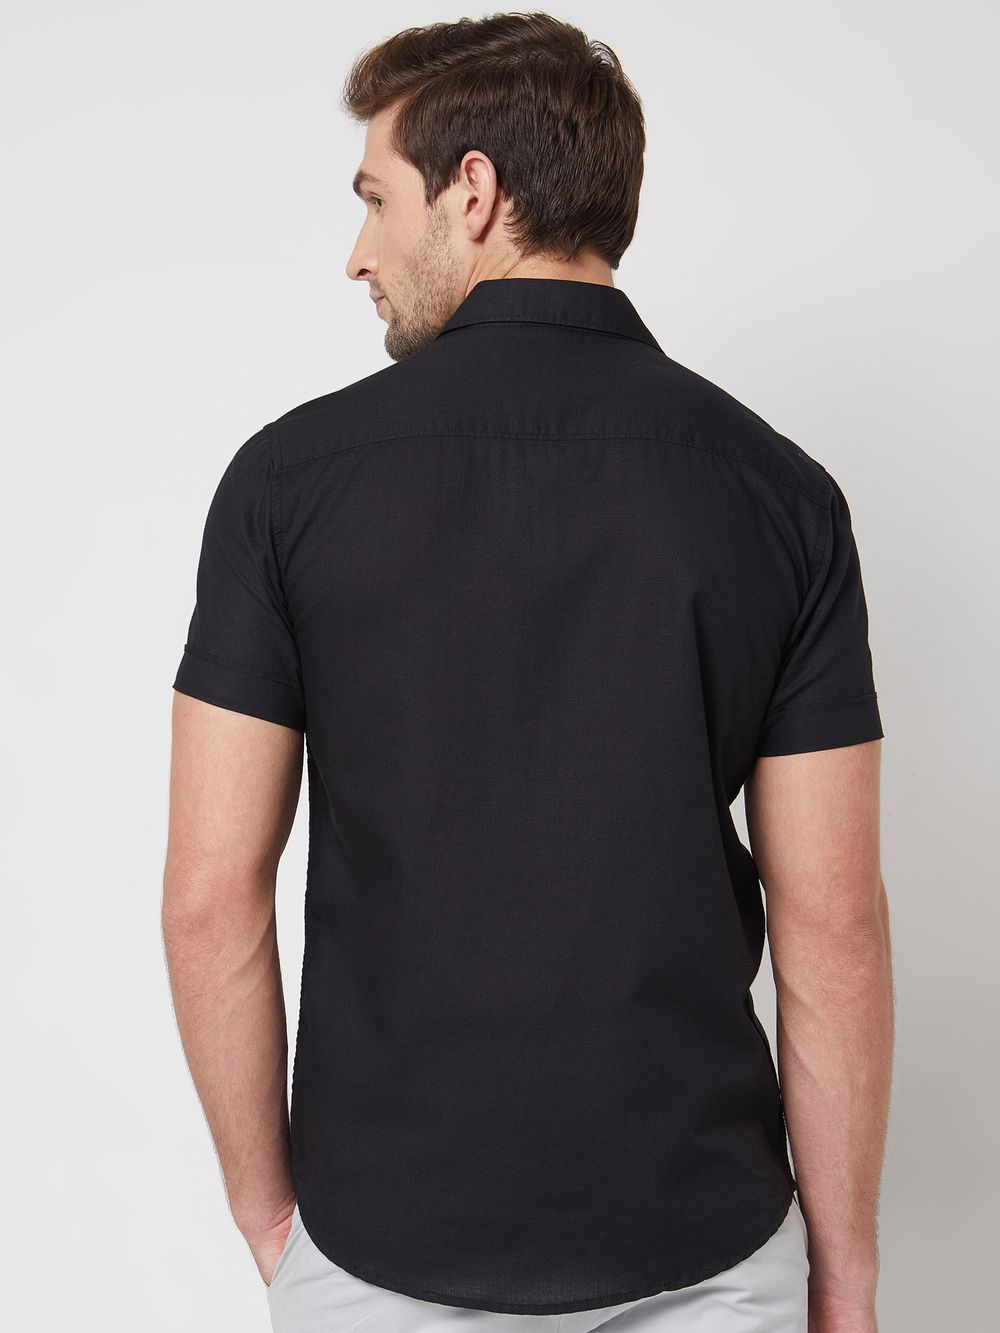 Black Cotton Linen Plain Slim Fit Casual Shirt